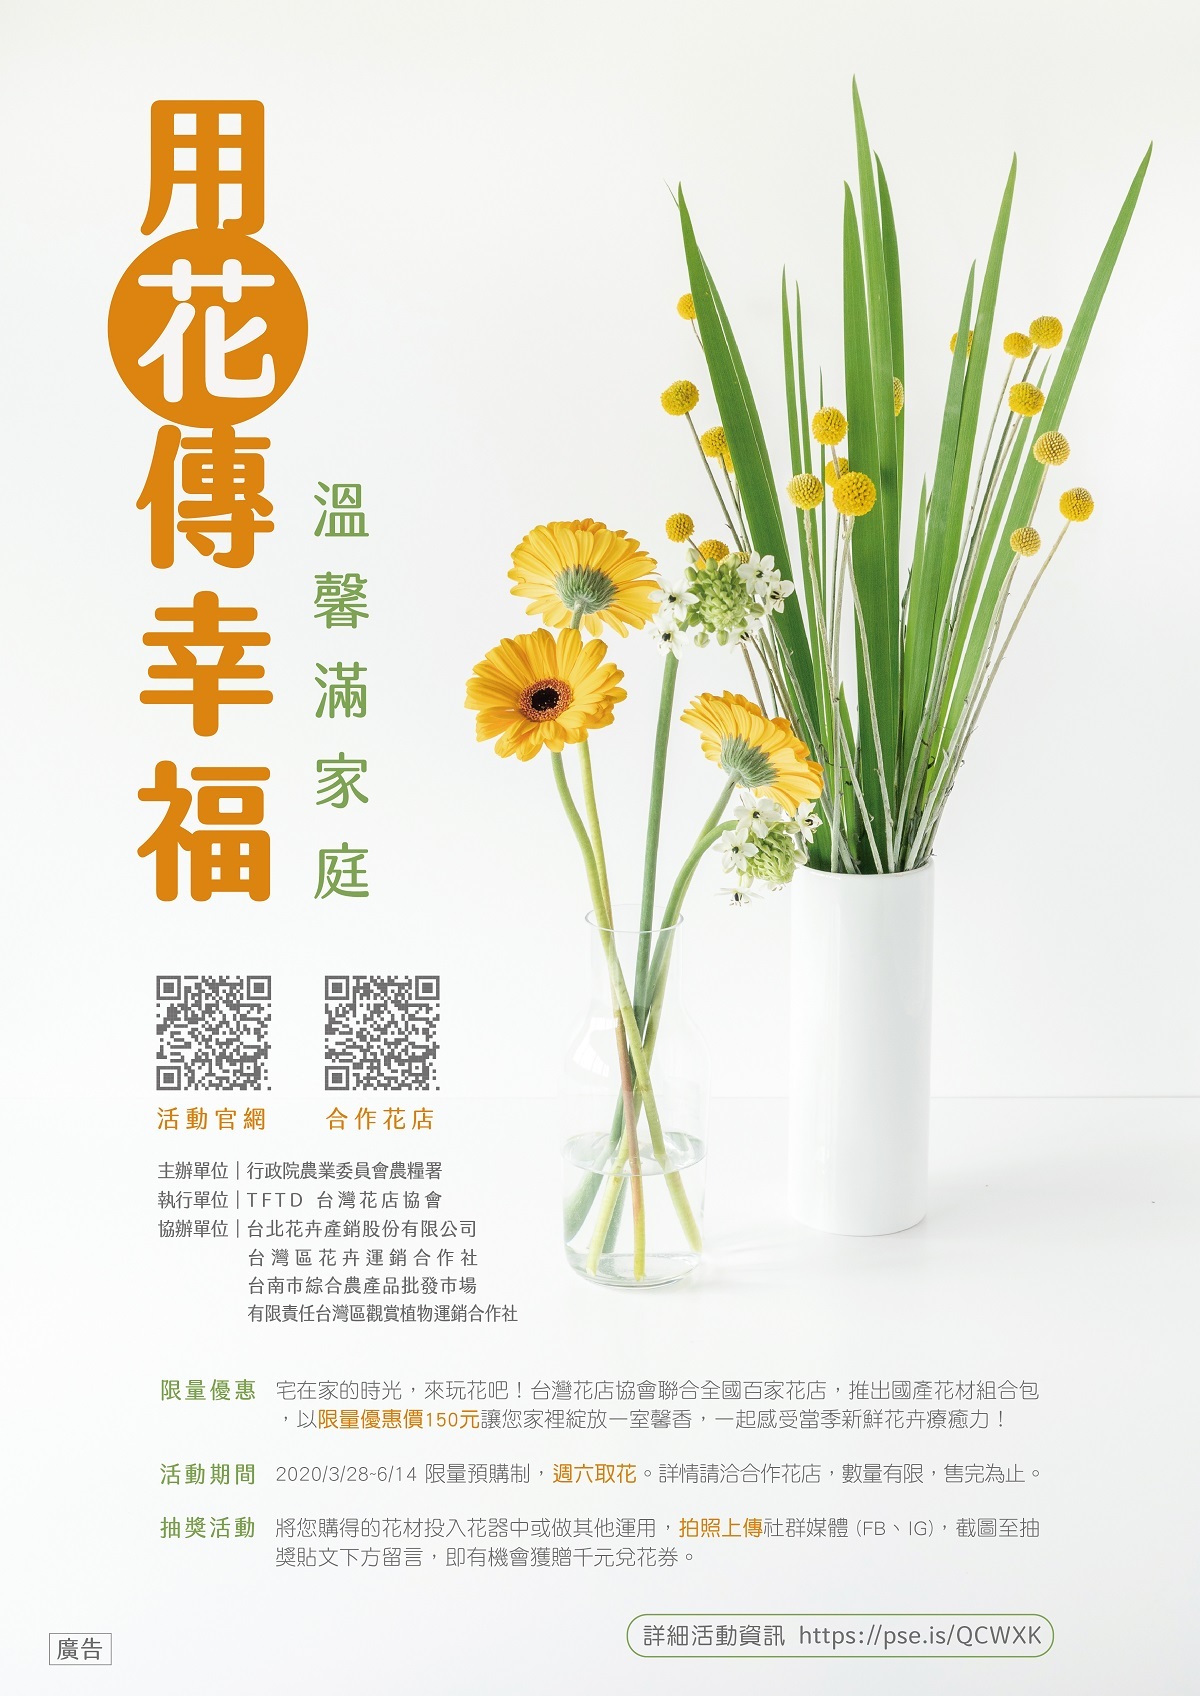 用花傳幸福 溫馨滿家庭居家花藝推廣活動 Tftd台灣花店協會 官方網站